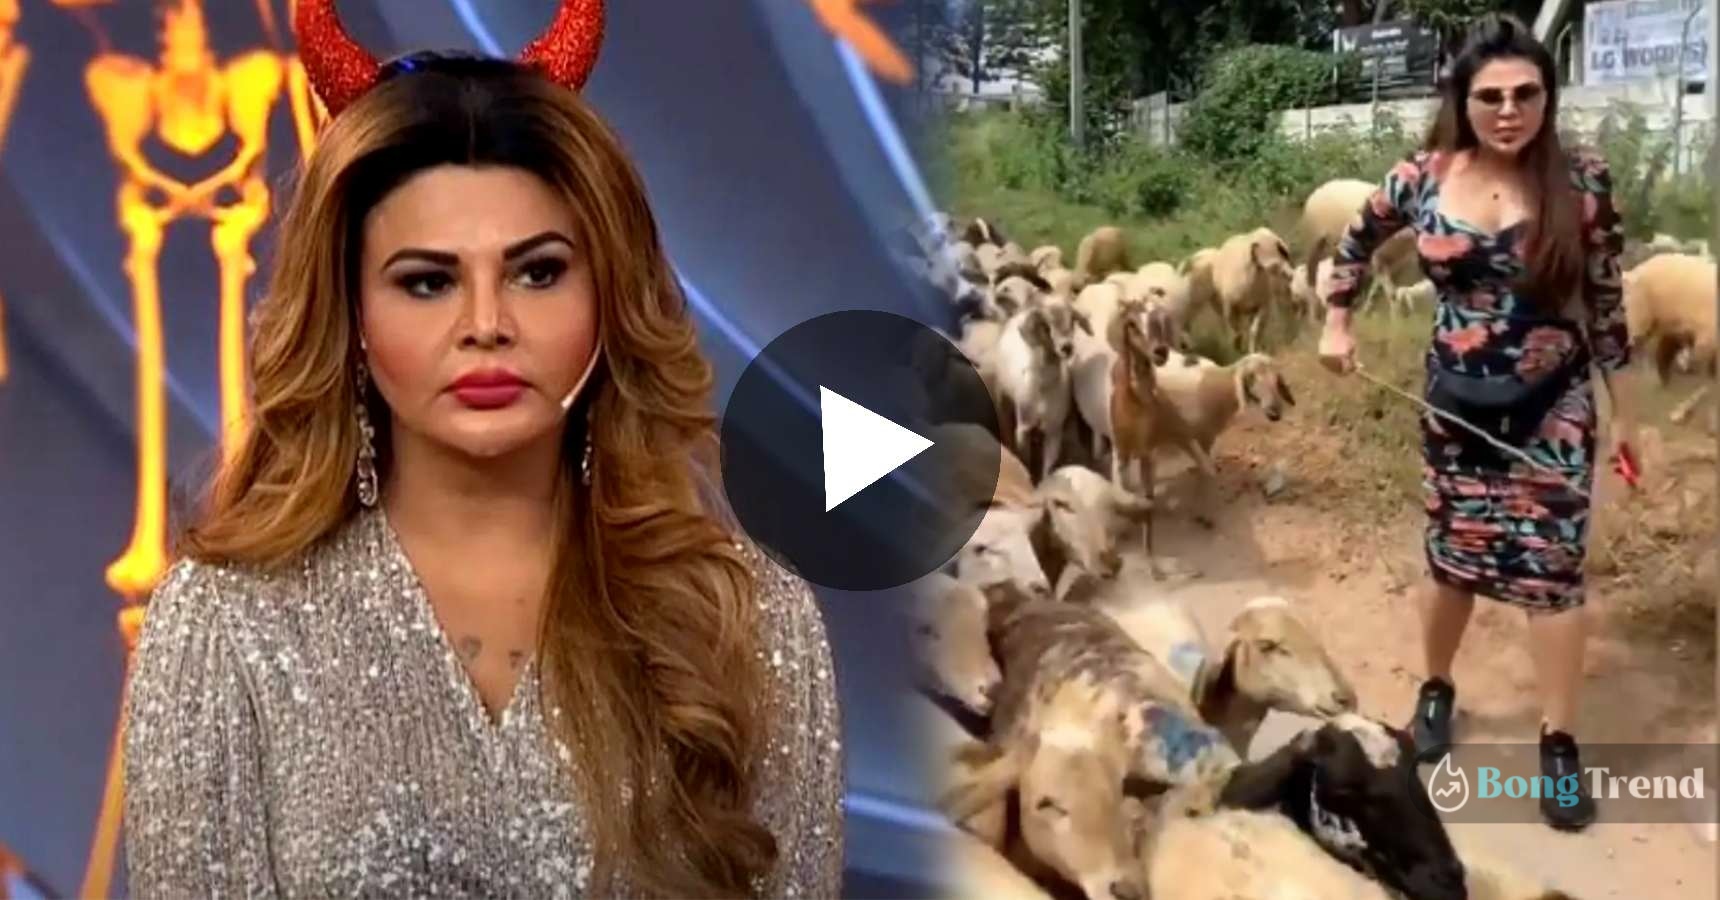 Rakhi Sawant hilirious video of sheep herding viral